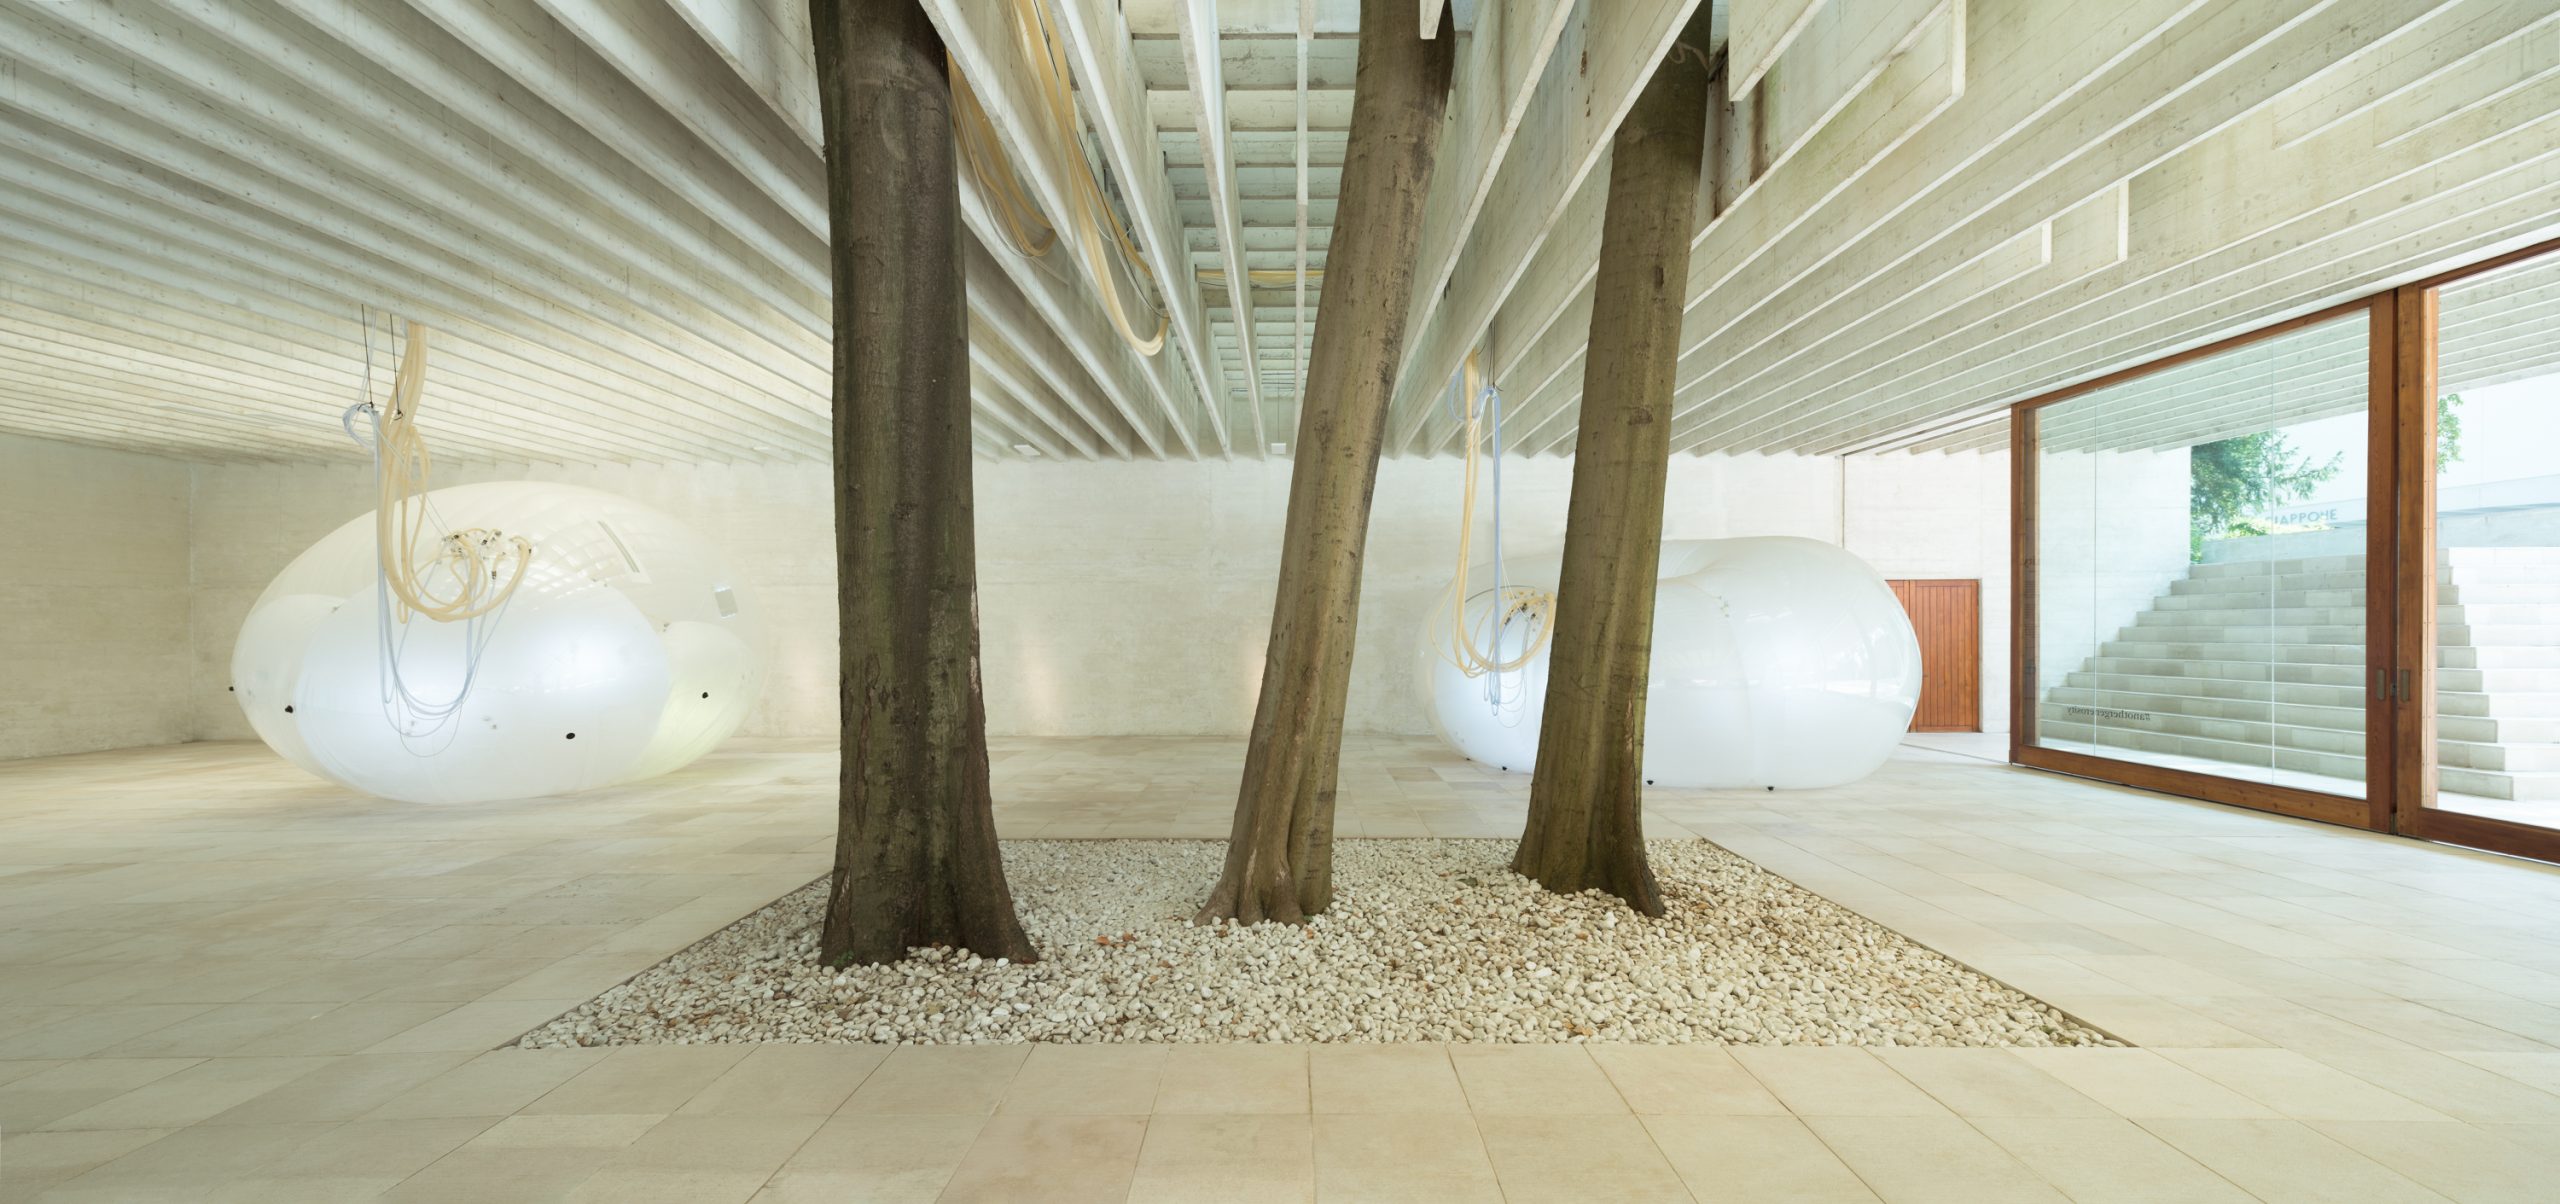 Nordischer-Pavillon-Architekturbiennale-2018-1